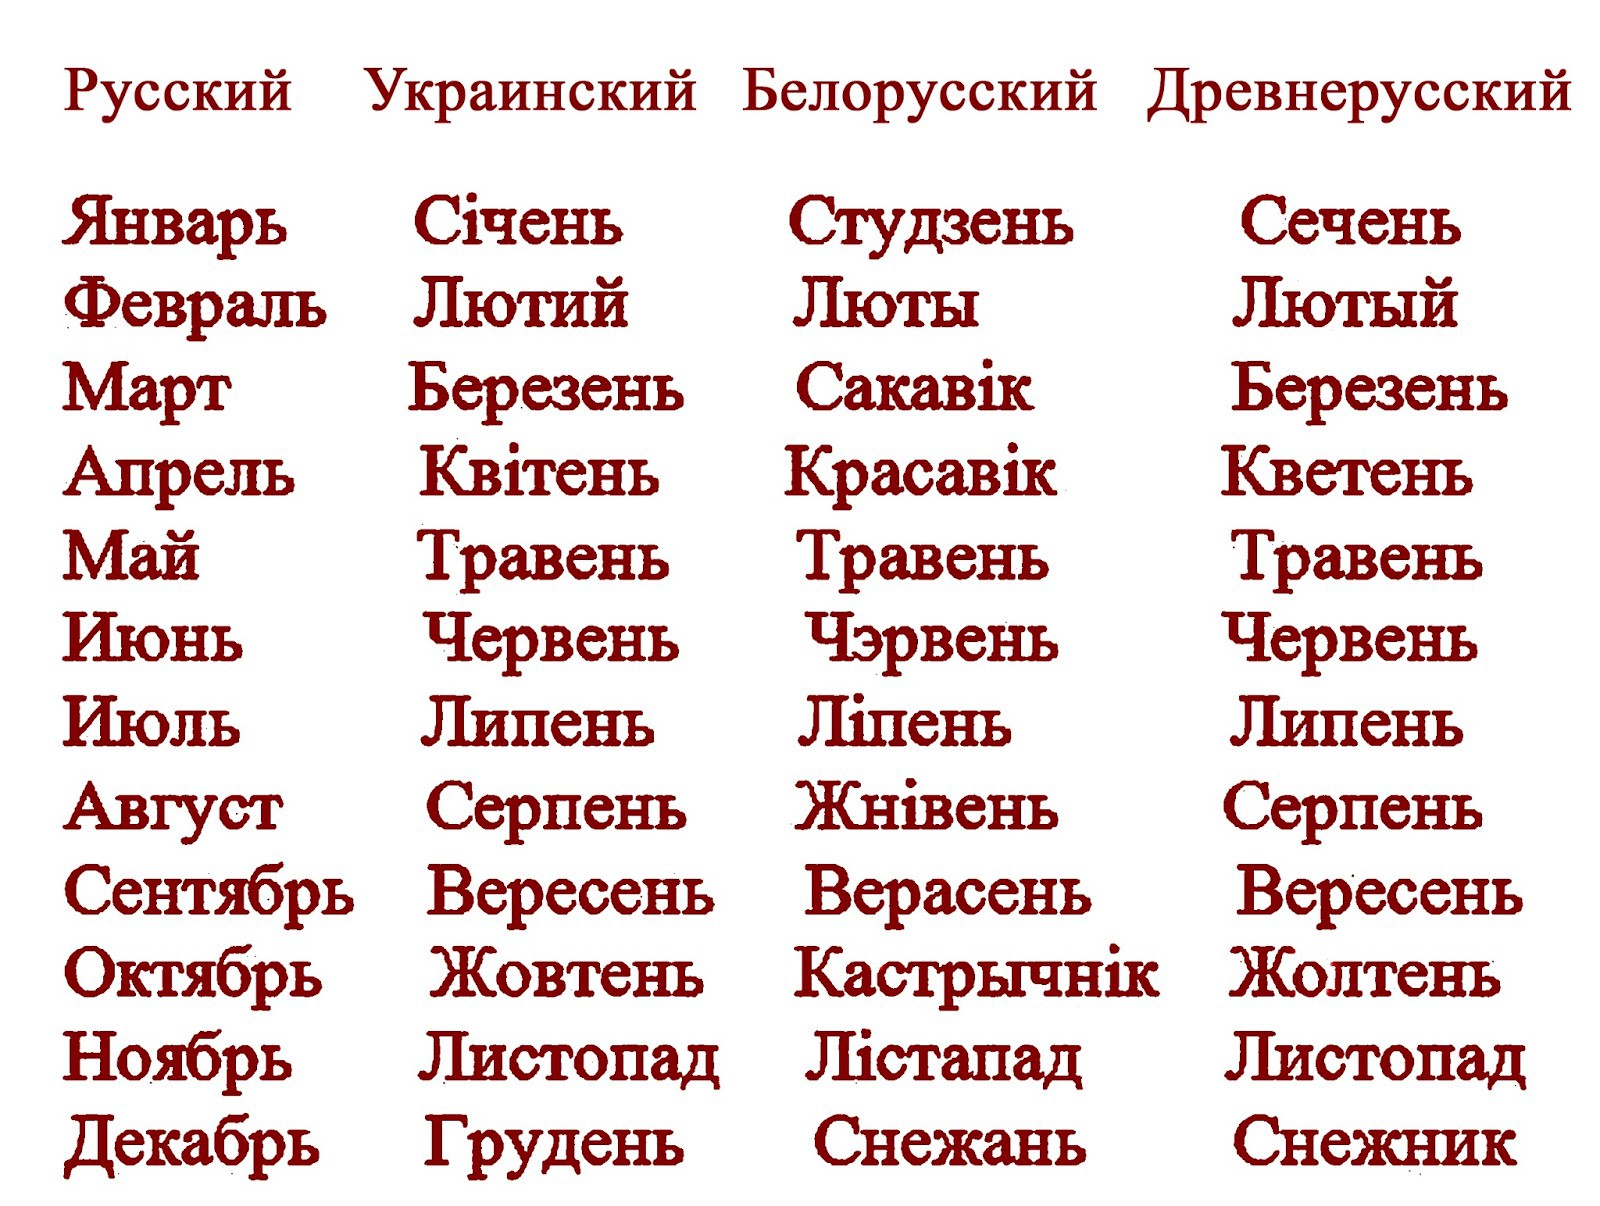 Как будет март по белорусски. Месяца на украинском. Названия месяцев на украинском. Месяца года на украинском языке. Месяца с украинского на русский.